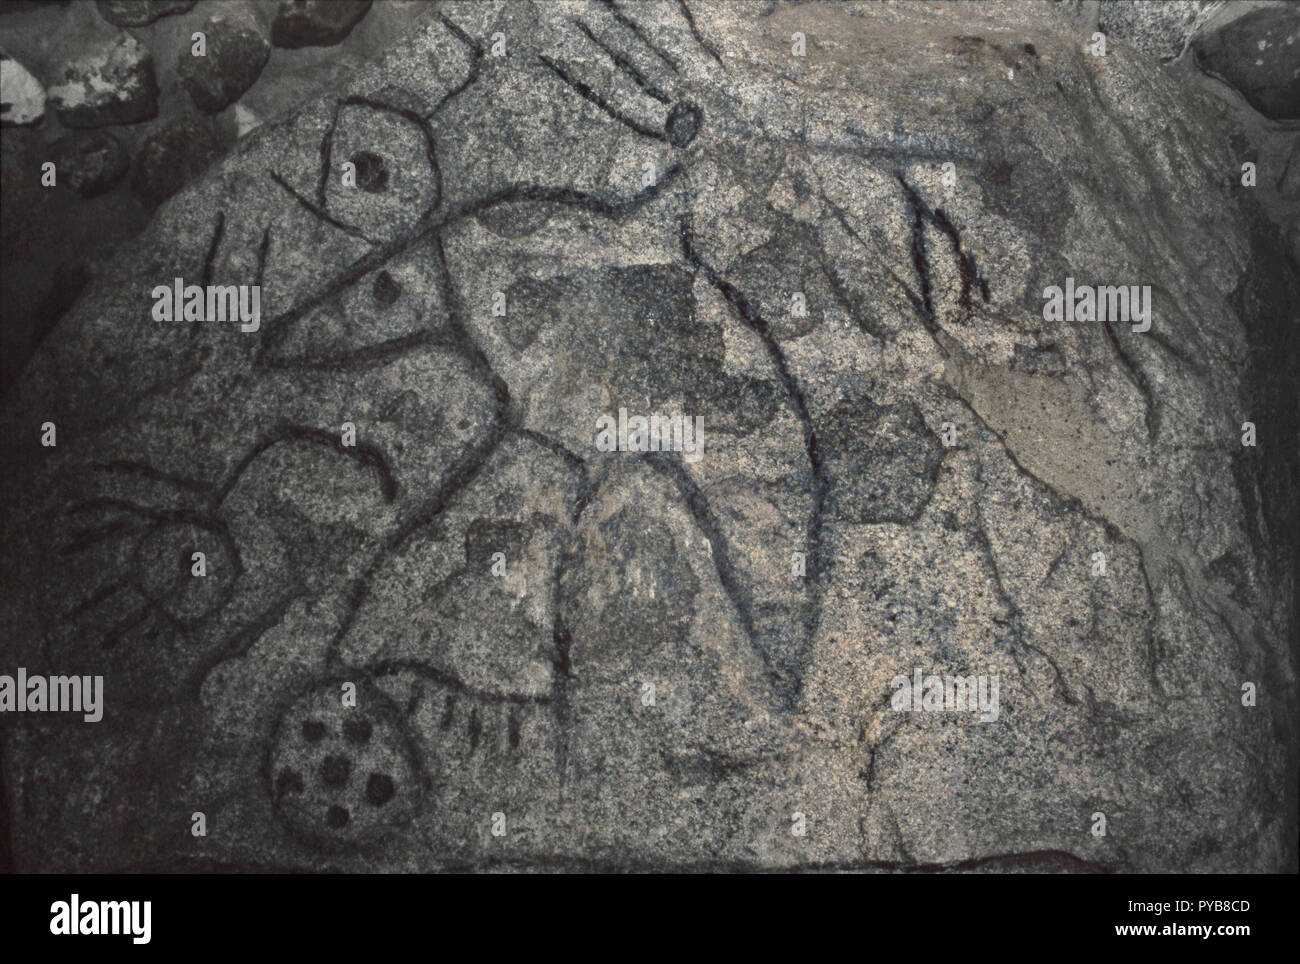 Schreiben Rock, Indianische Felszeichnungen auf Granit, Nordwesten von North Dakota. Foto Stockfoto